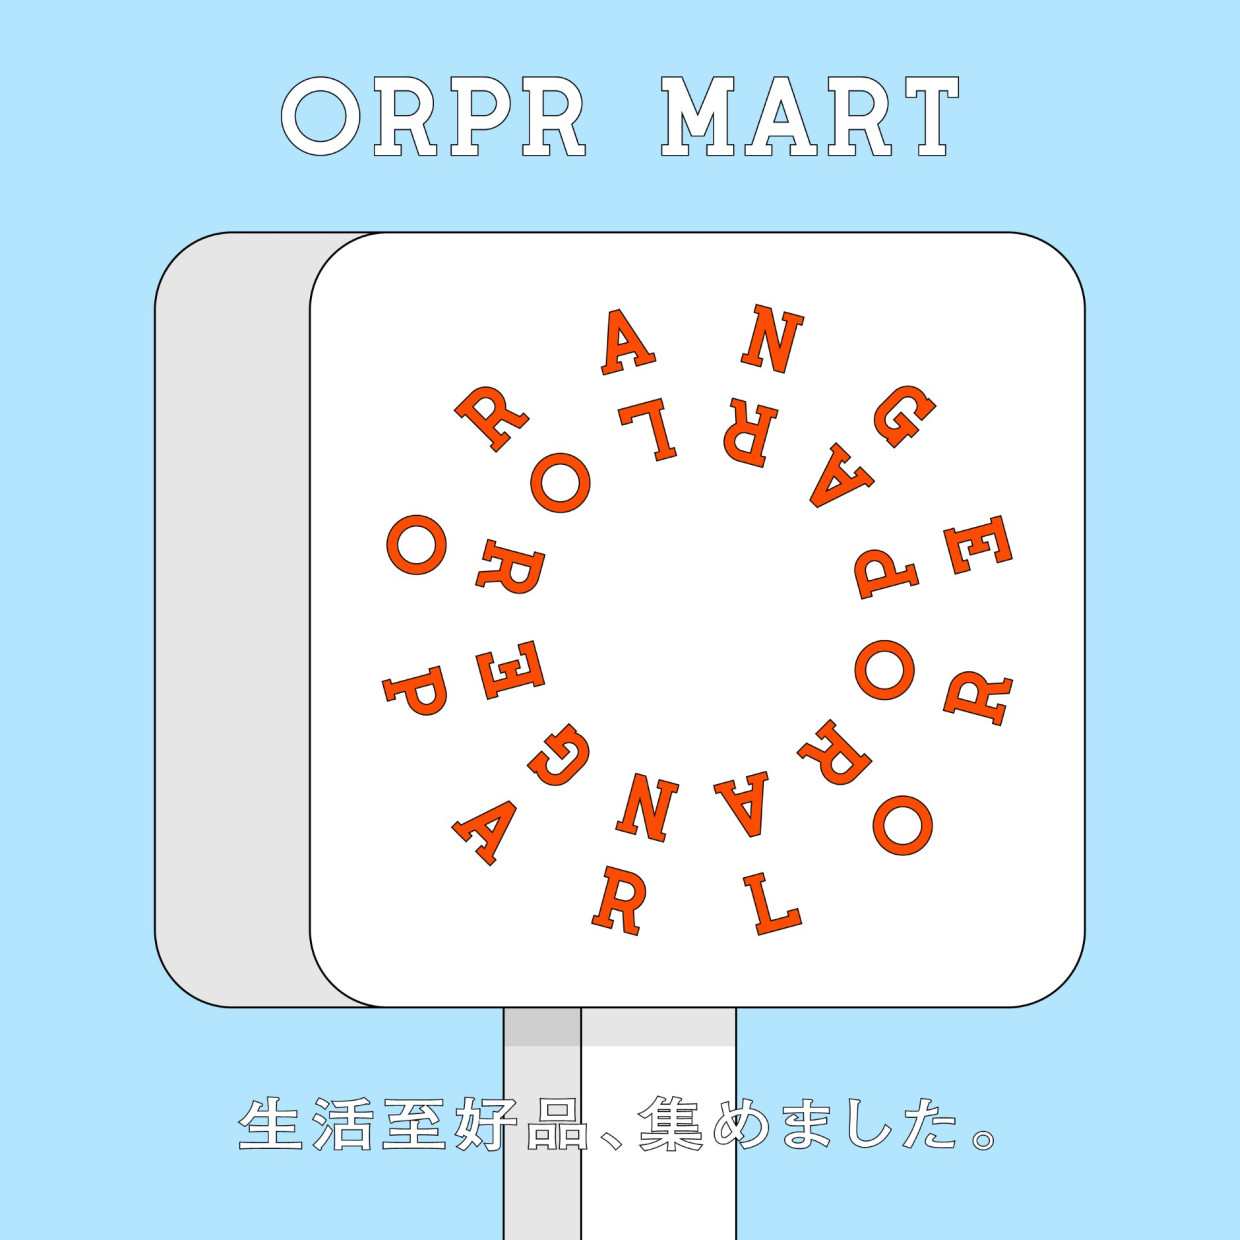 ORPR MART